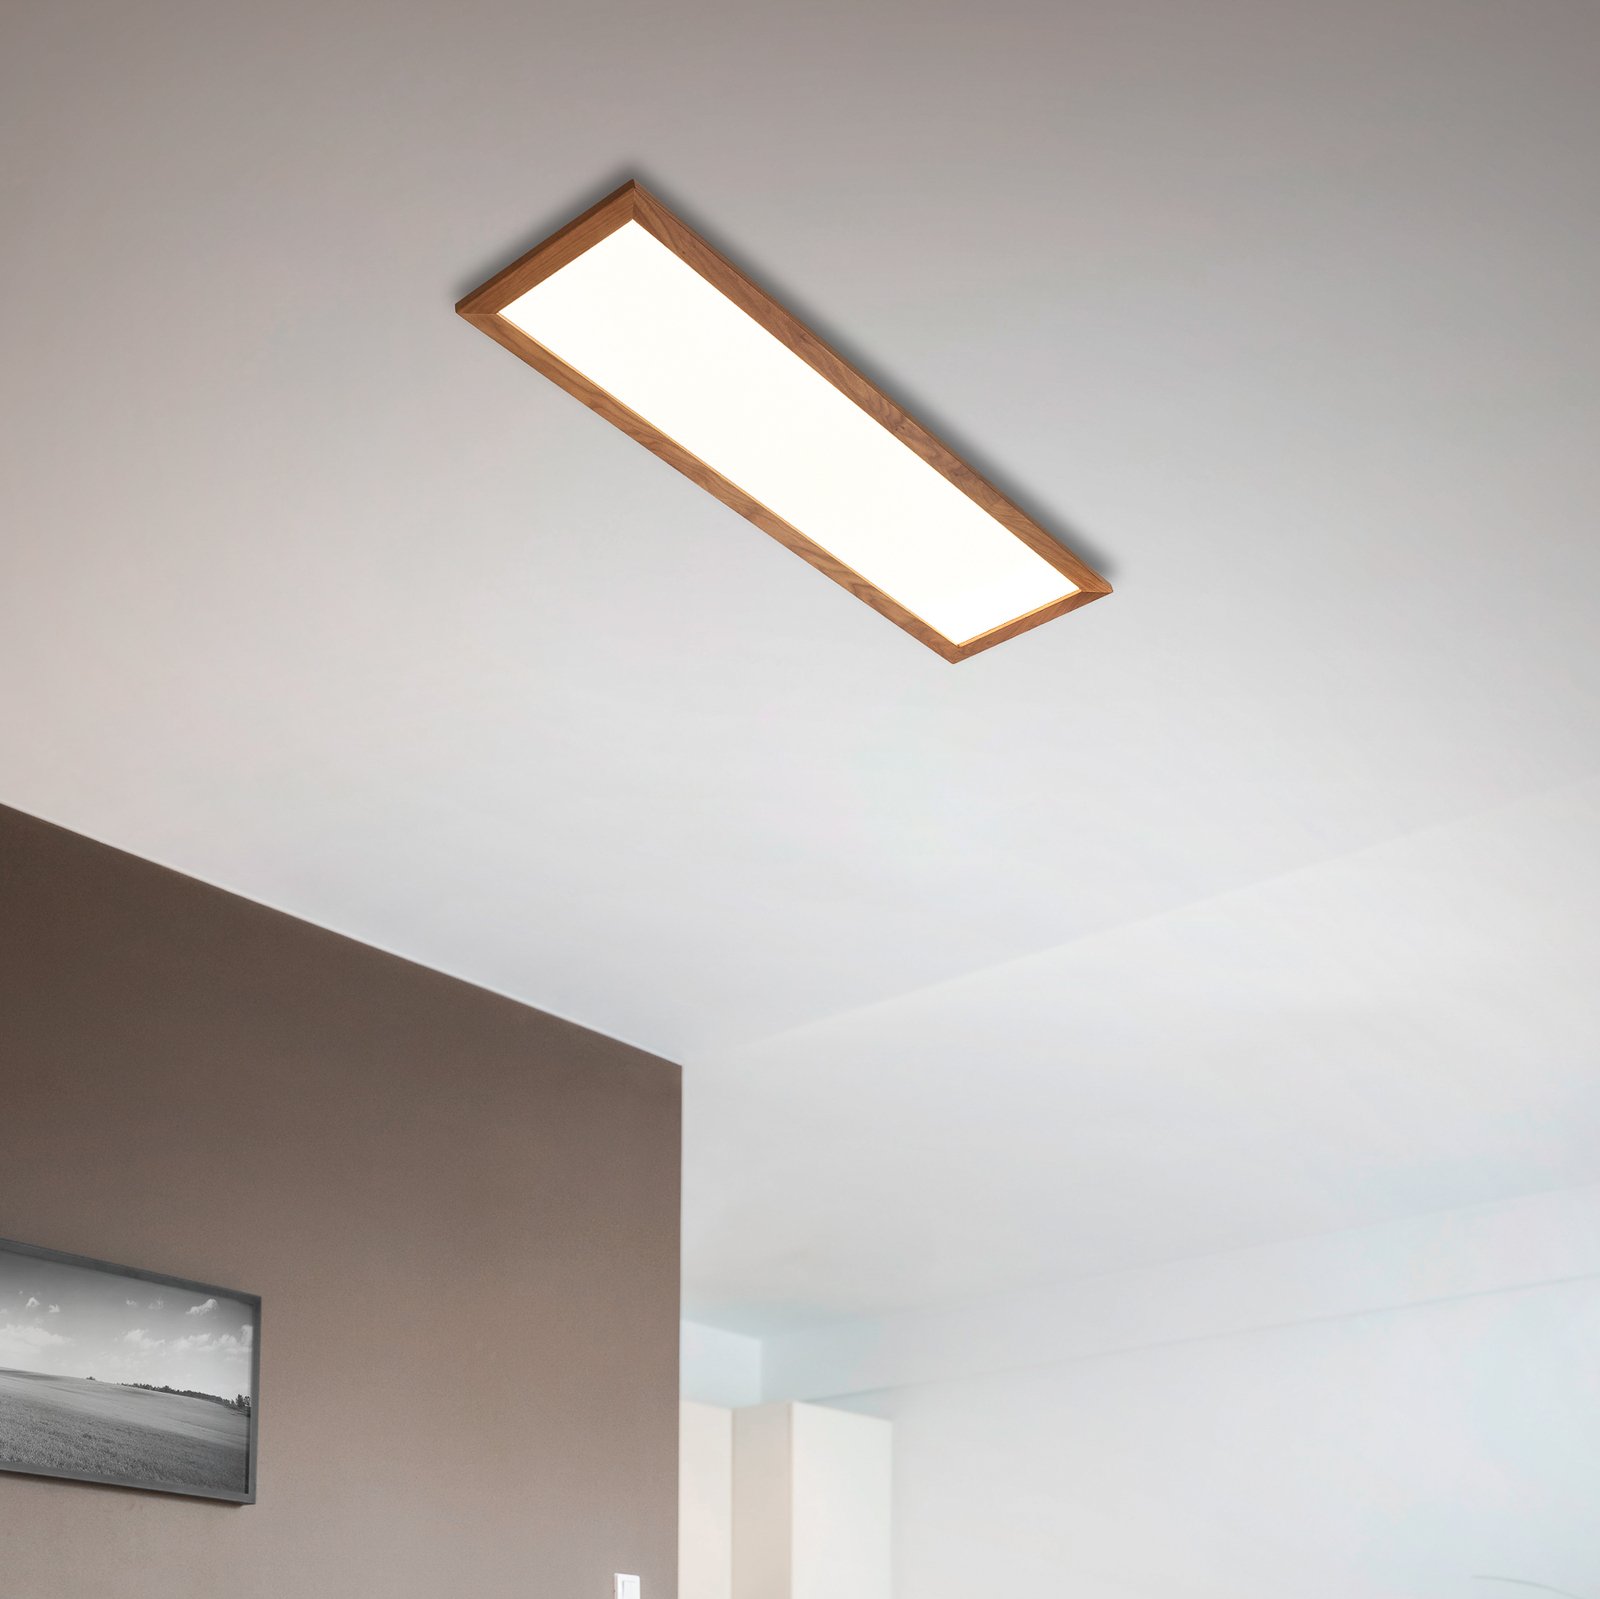 Quitani Aurinor LED paneel, walnoot, 125 cm